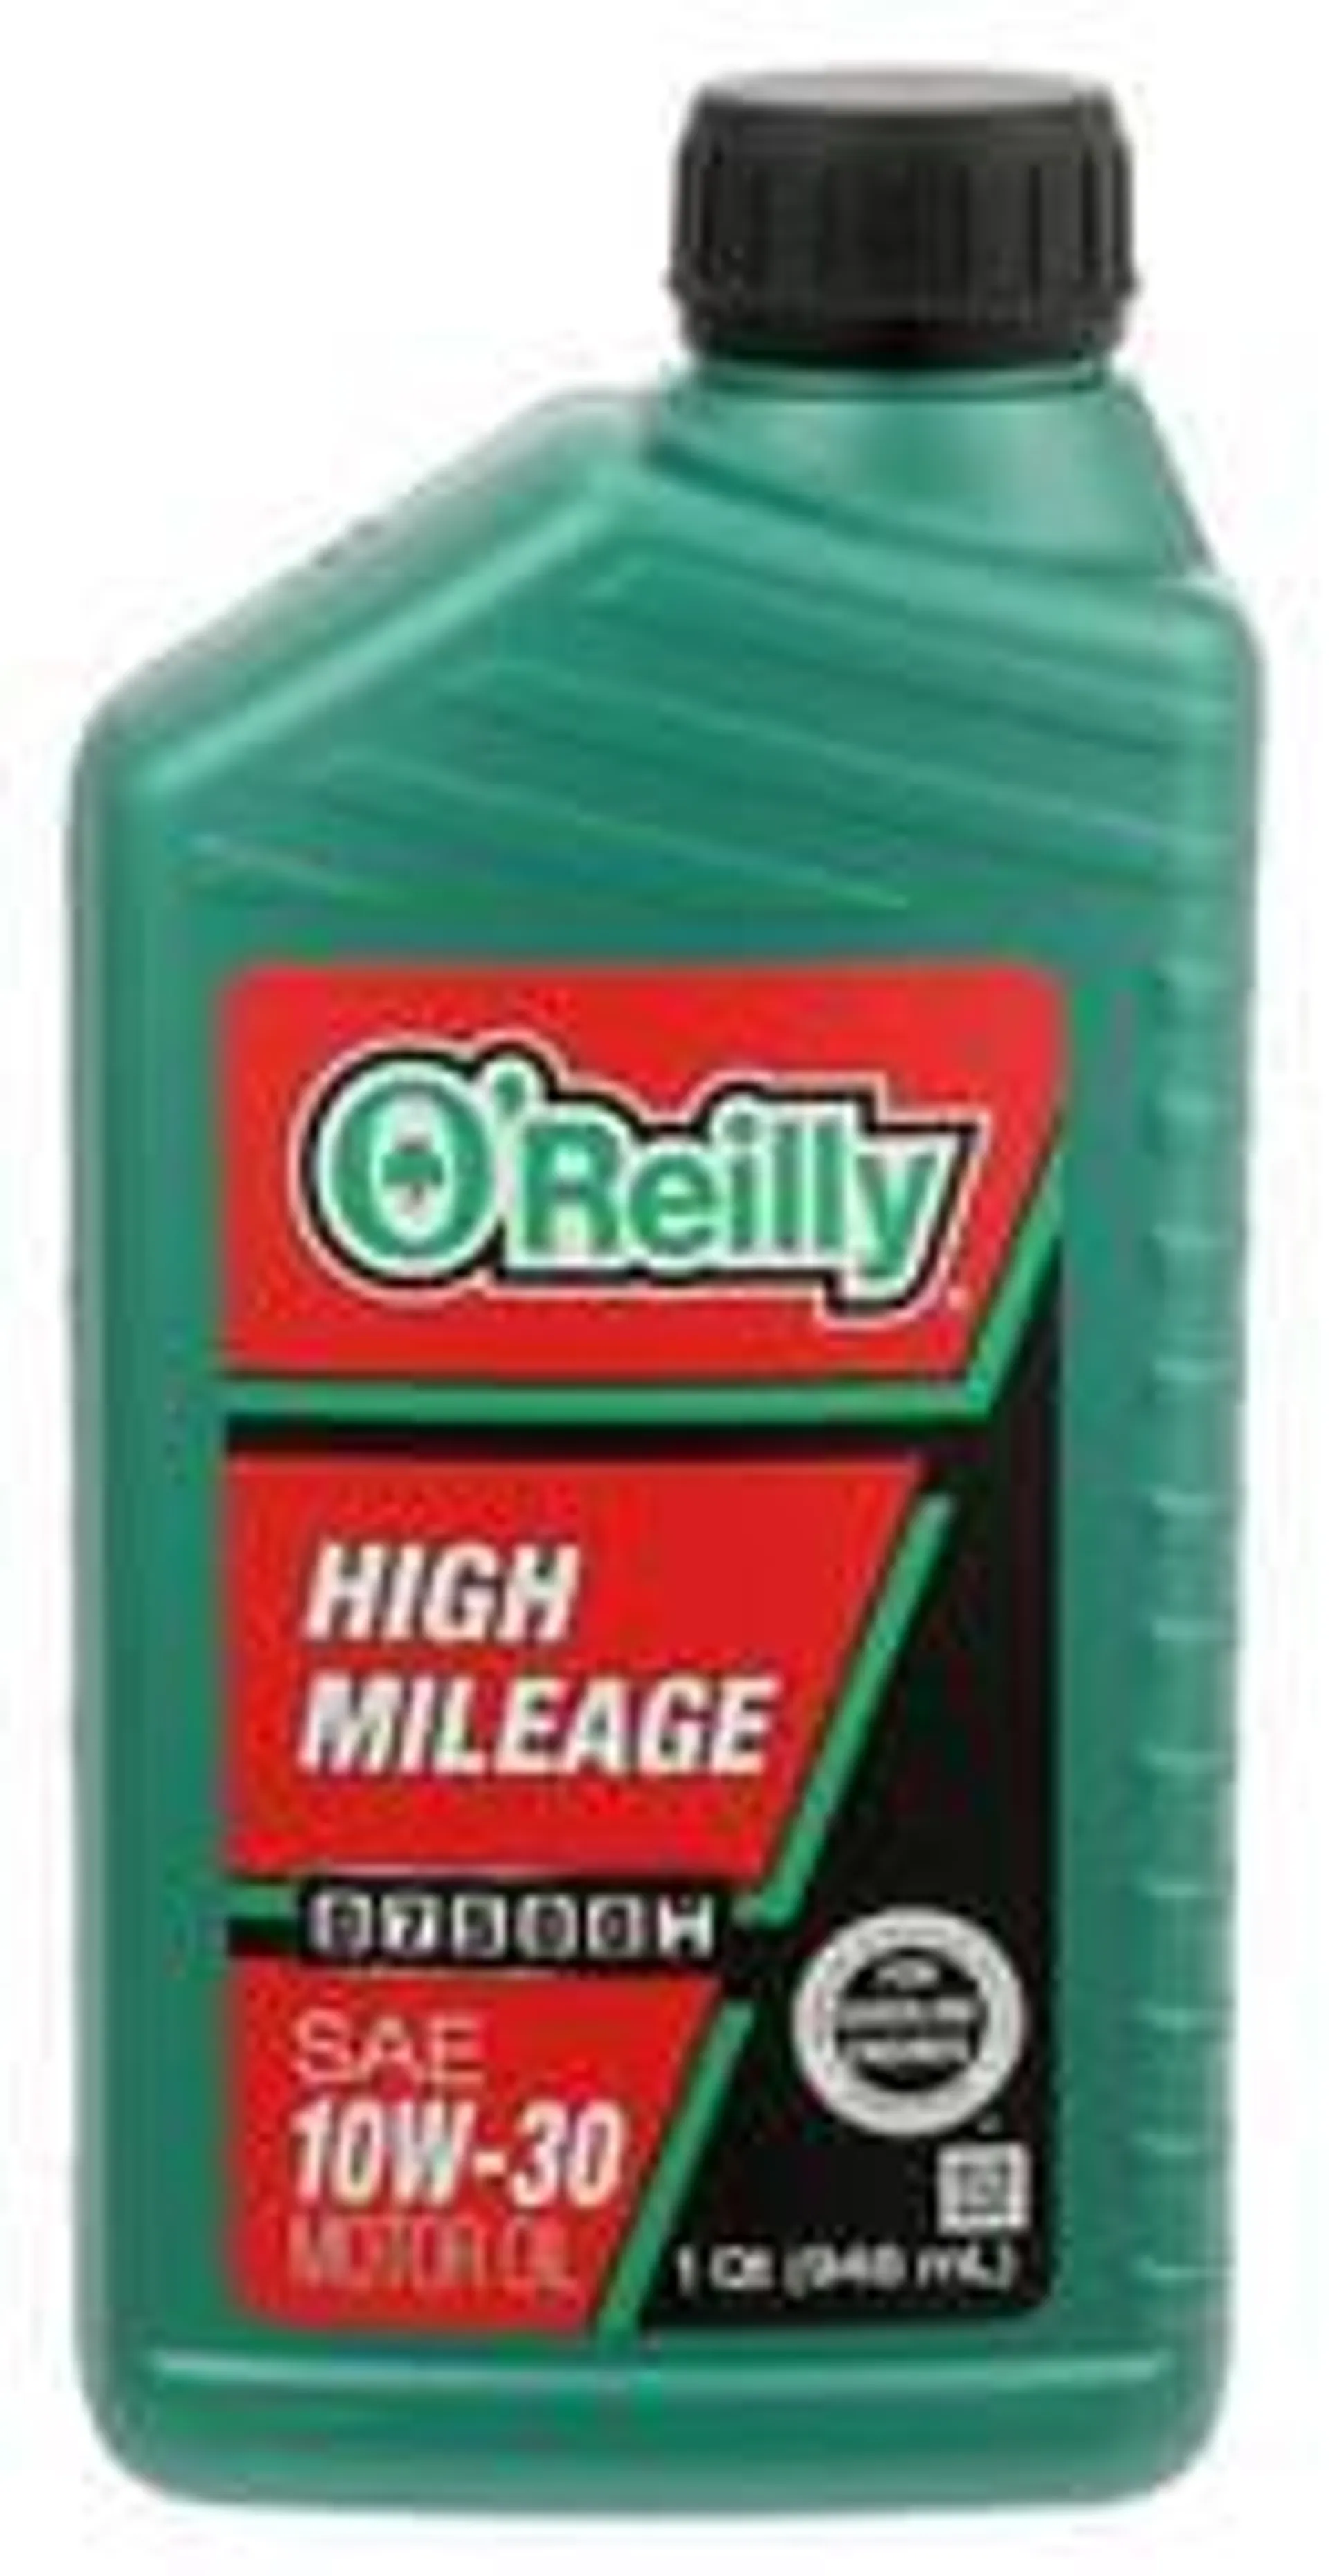 O'Reilly Conventional Motor Oil 1 Quart - HIGHMILE10-30